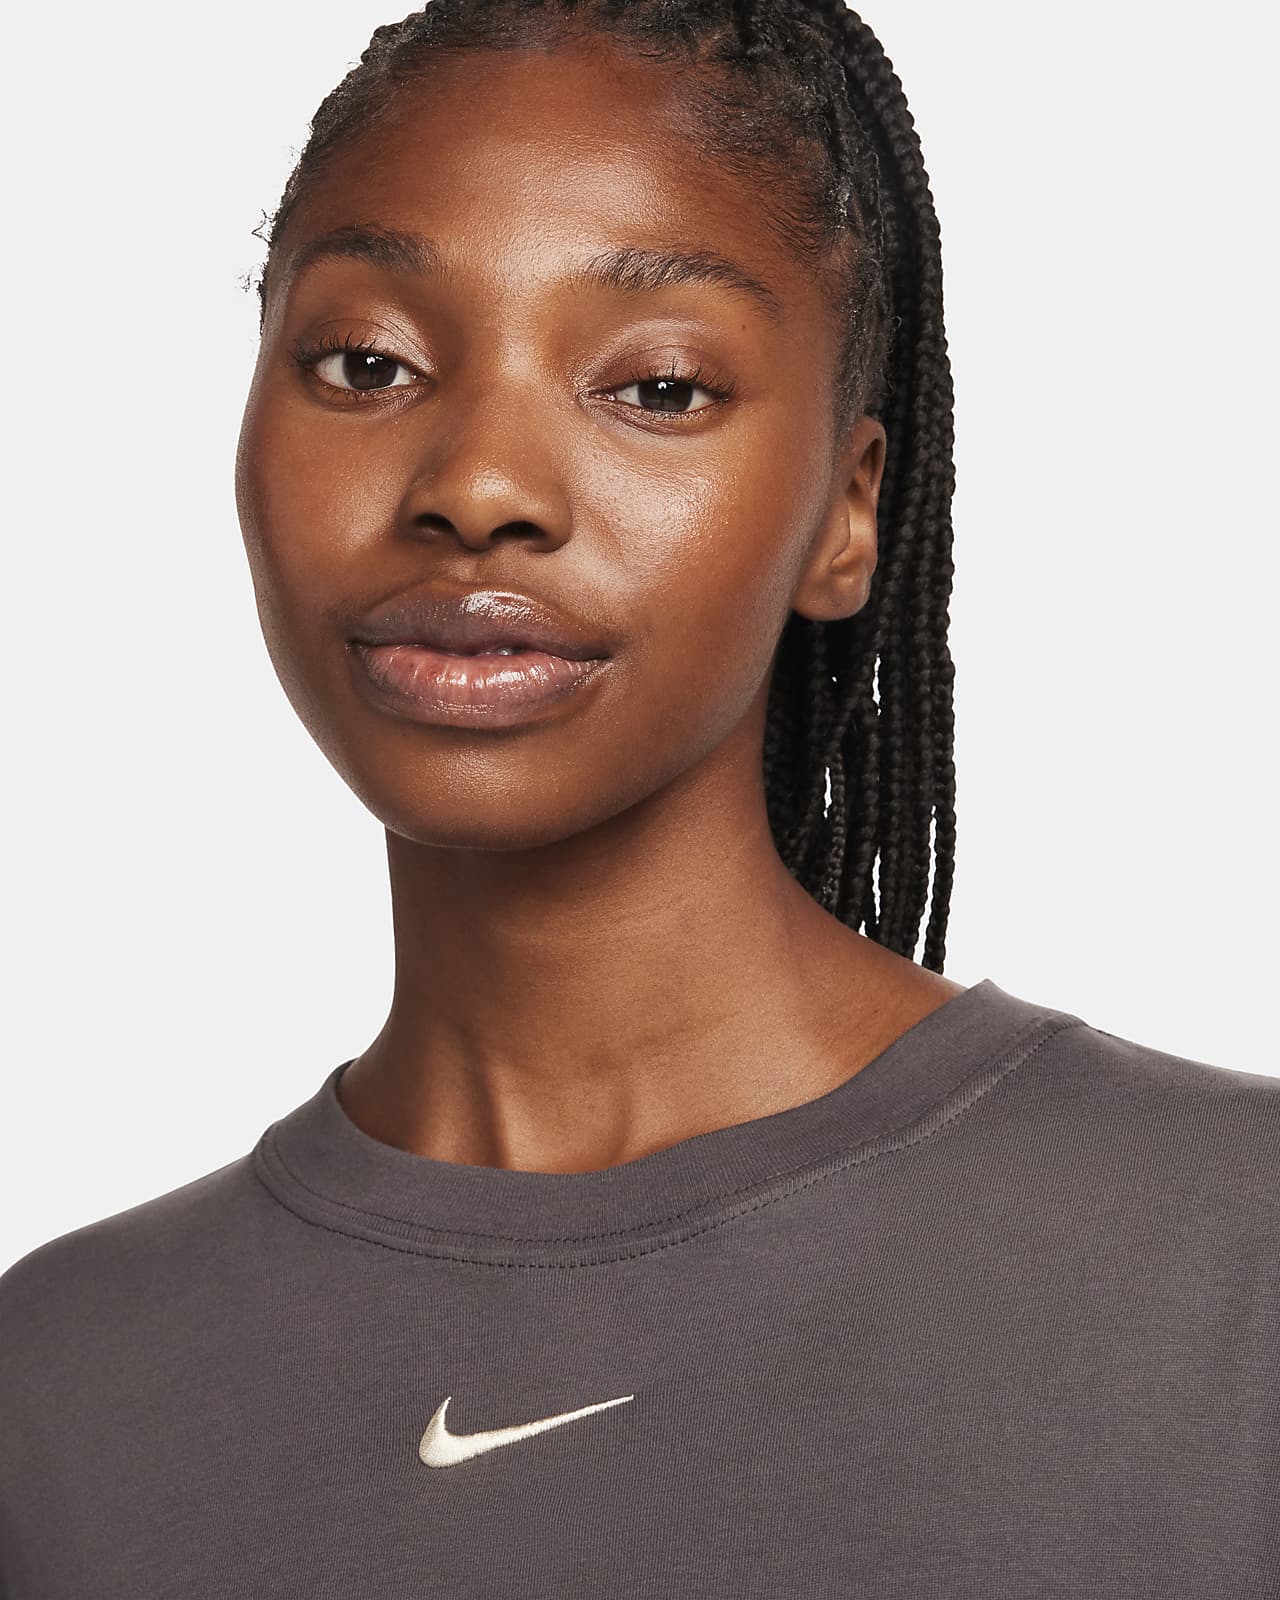 Nike Sportswear Women's Long-Sleeve T-Shirt